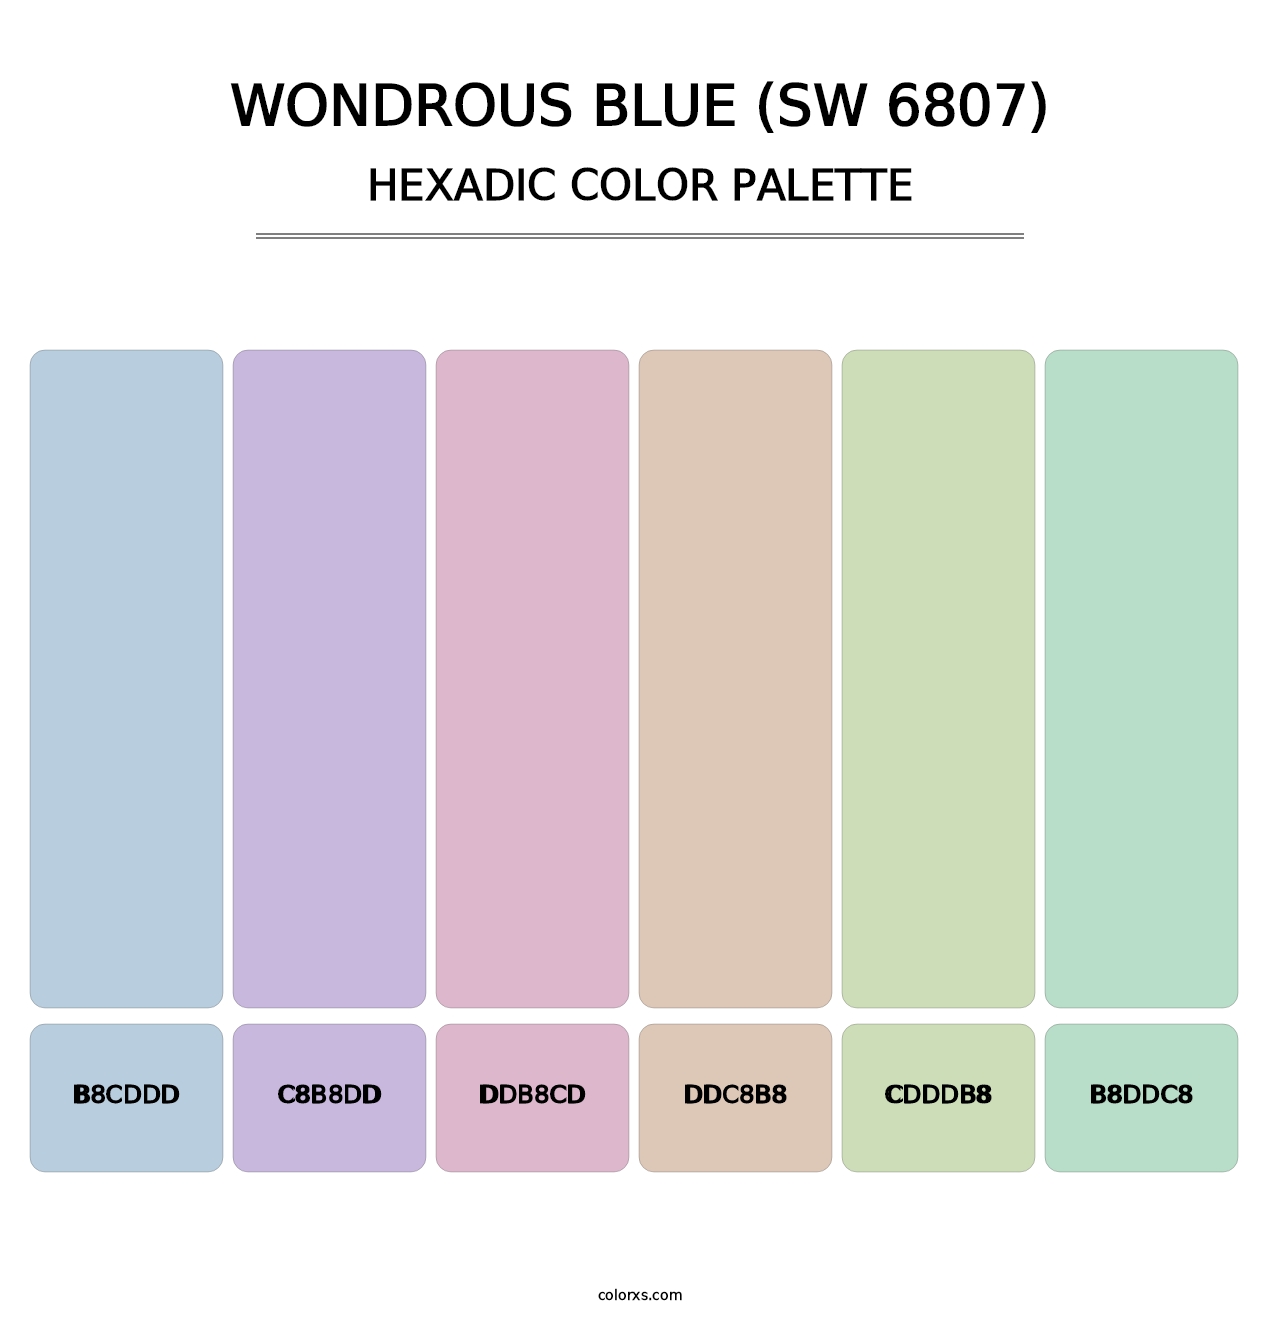 Wondrous Blue (SW 6807) - Hexadic Color Palette